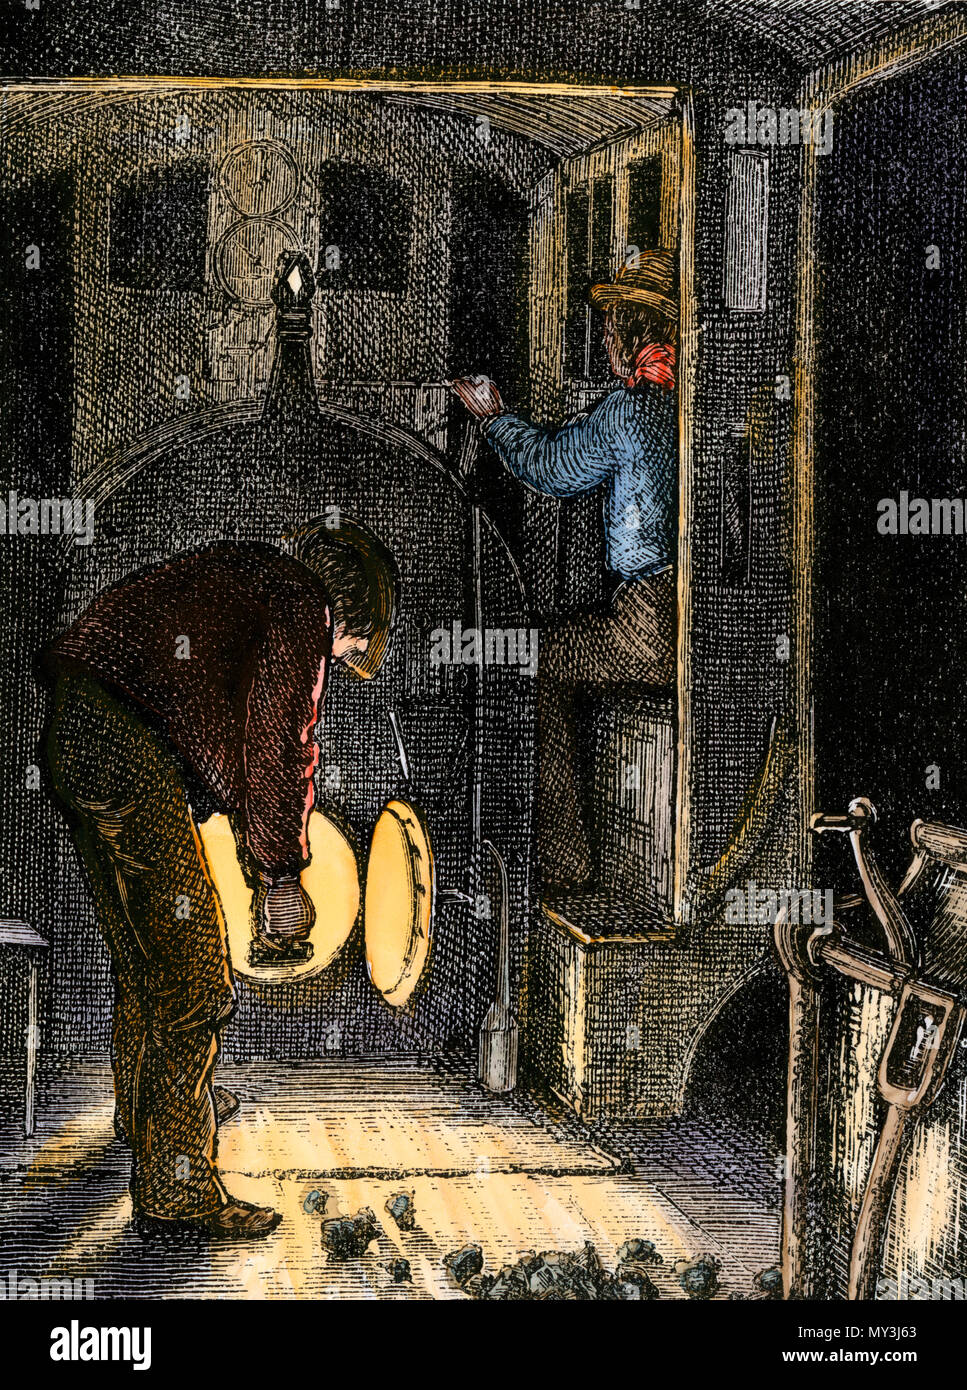 Kohleschaufelns in der Kabine einer Dampflokomotive, in der Nacht, 1800. Hand - farbige Holzschnitt Stockfoto